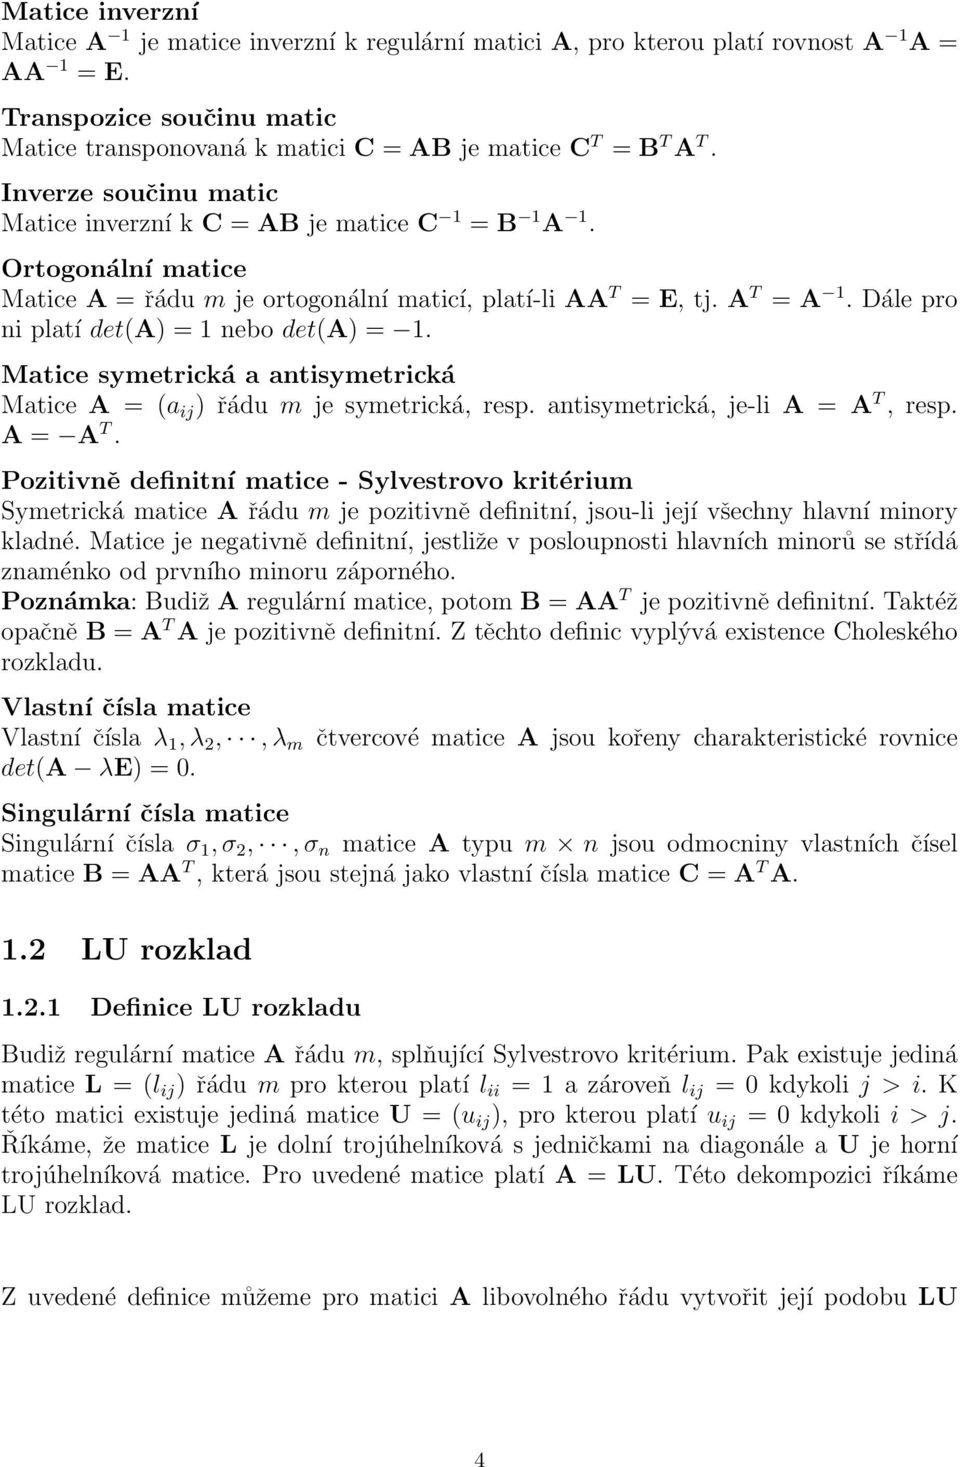 33 Analogicky lze sestavit prvky matice libovolného řádu n. Je tedy patrné, že pro prvky matice L, resp. U platí následující vztahy l ij = 1 j 1 a ij l ik u kj ; i = j + 1, j + 2,..., n (1.